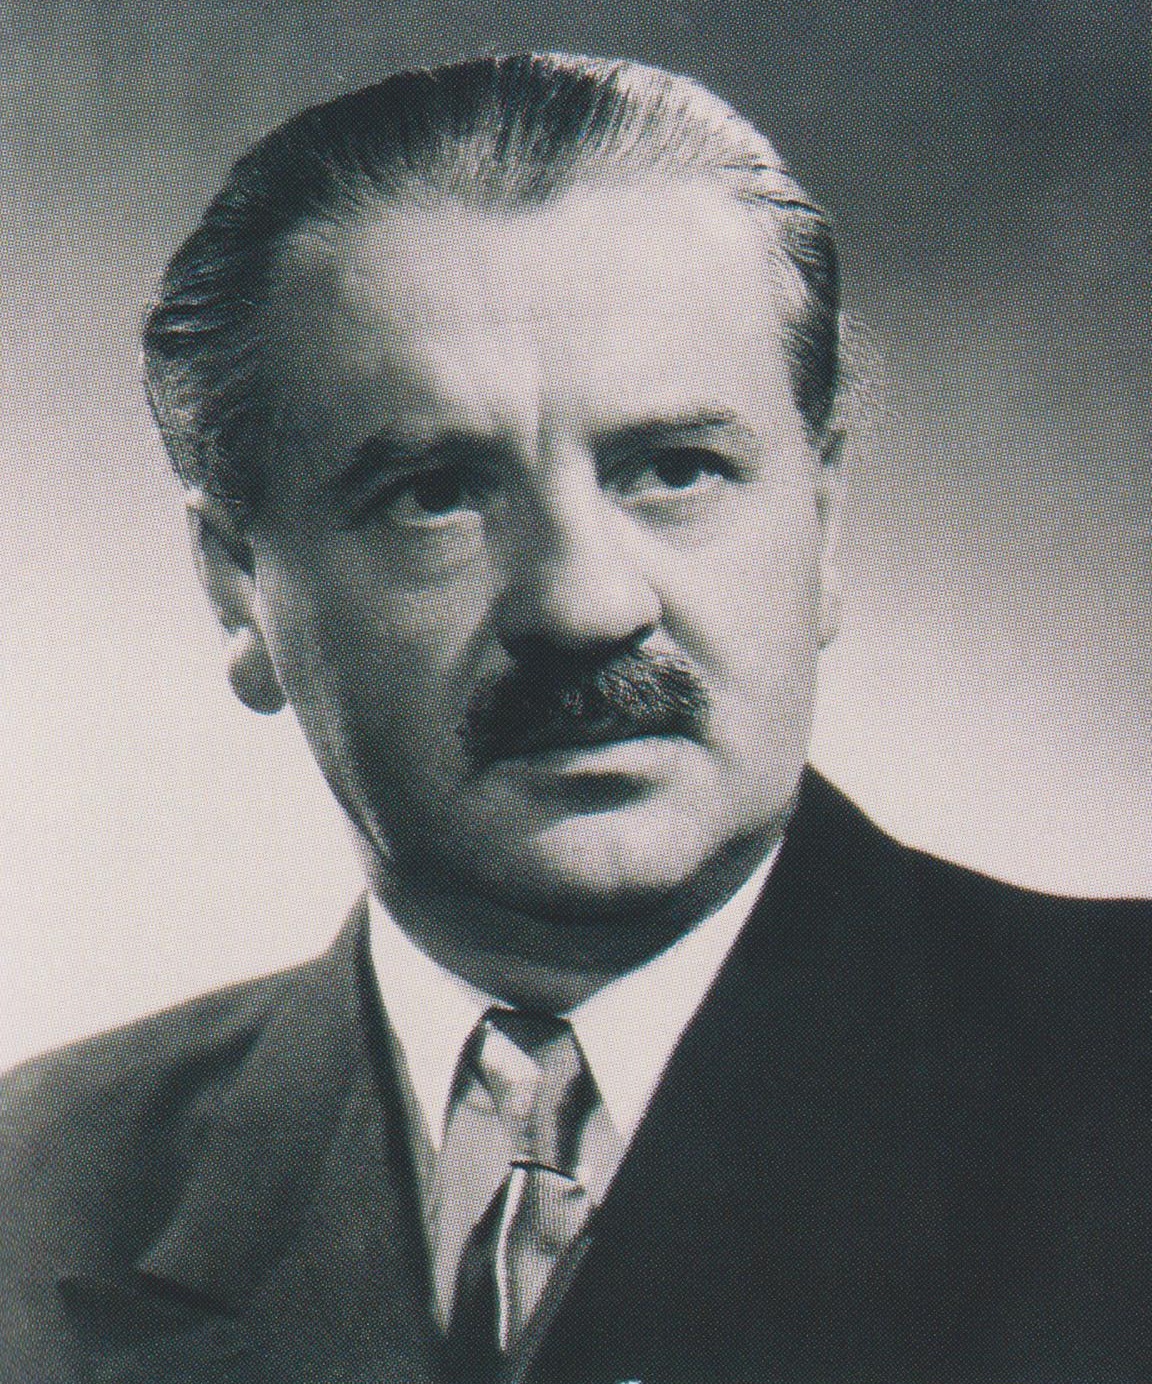 Tildy Zoltán köztársasági elnöki hivatalos portréja 1946-ban.